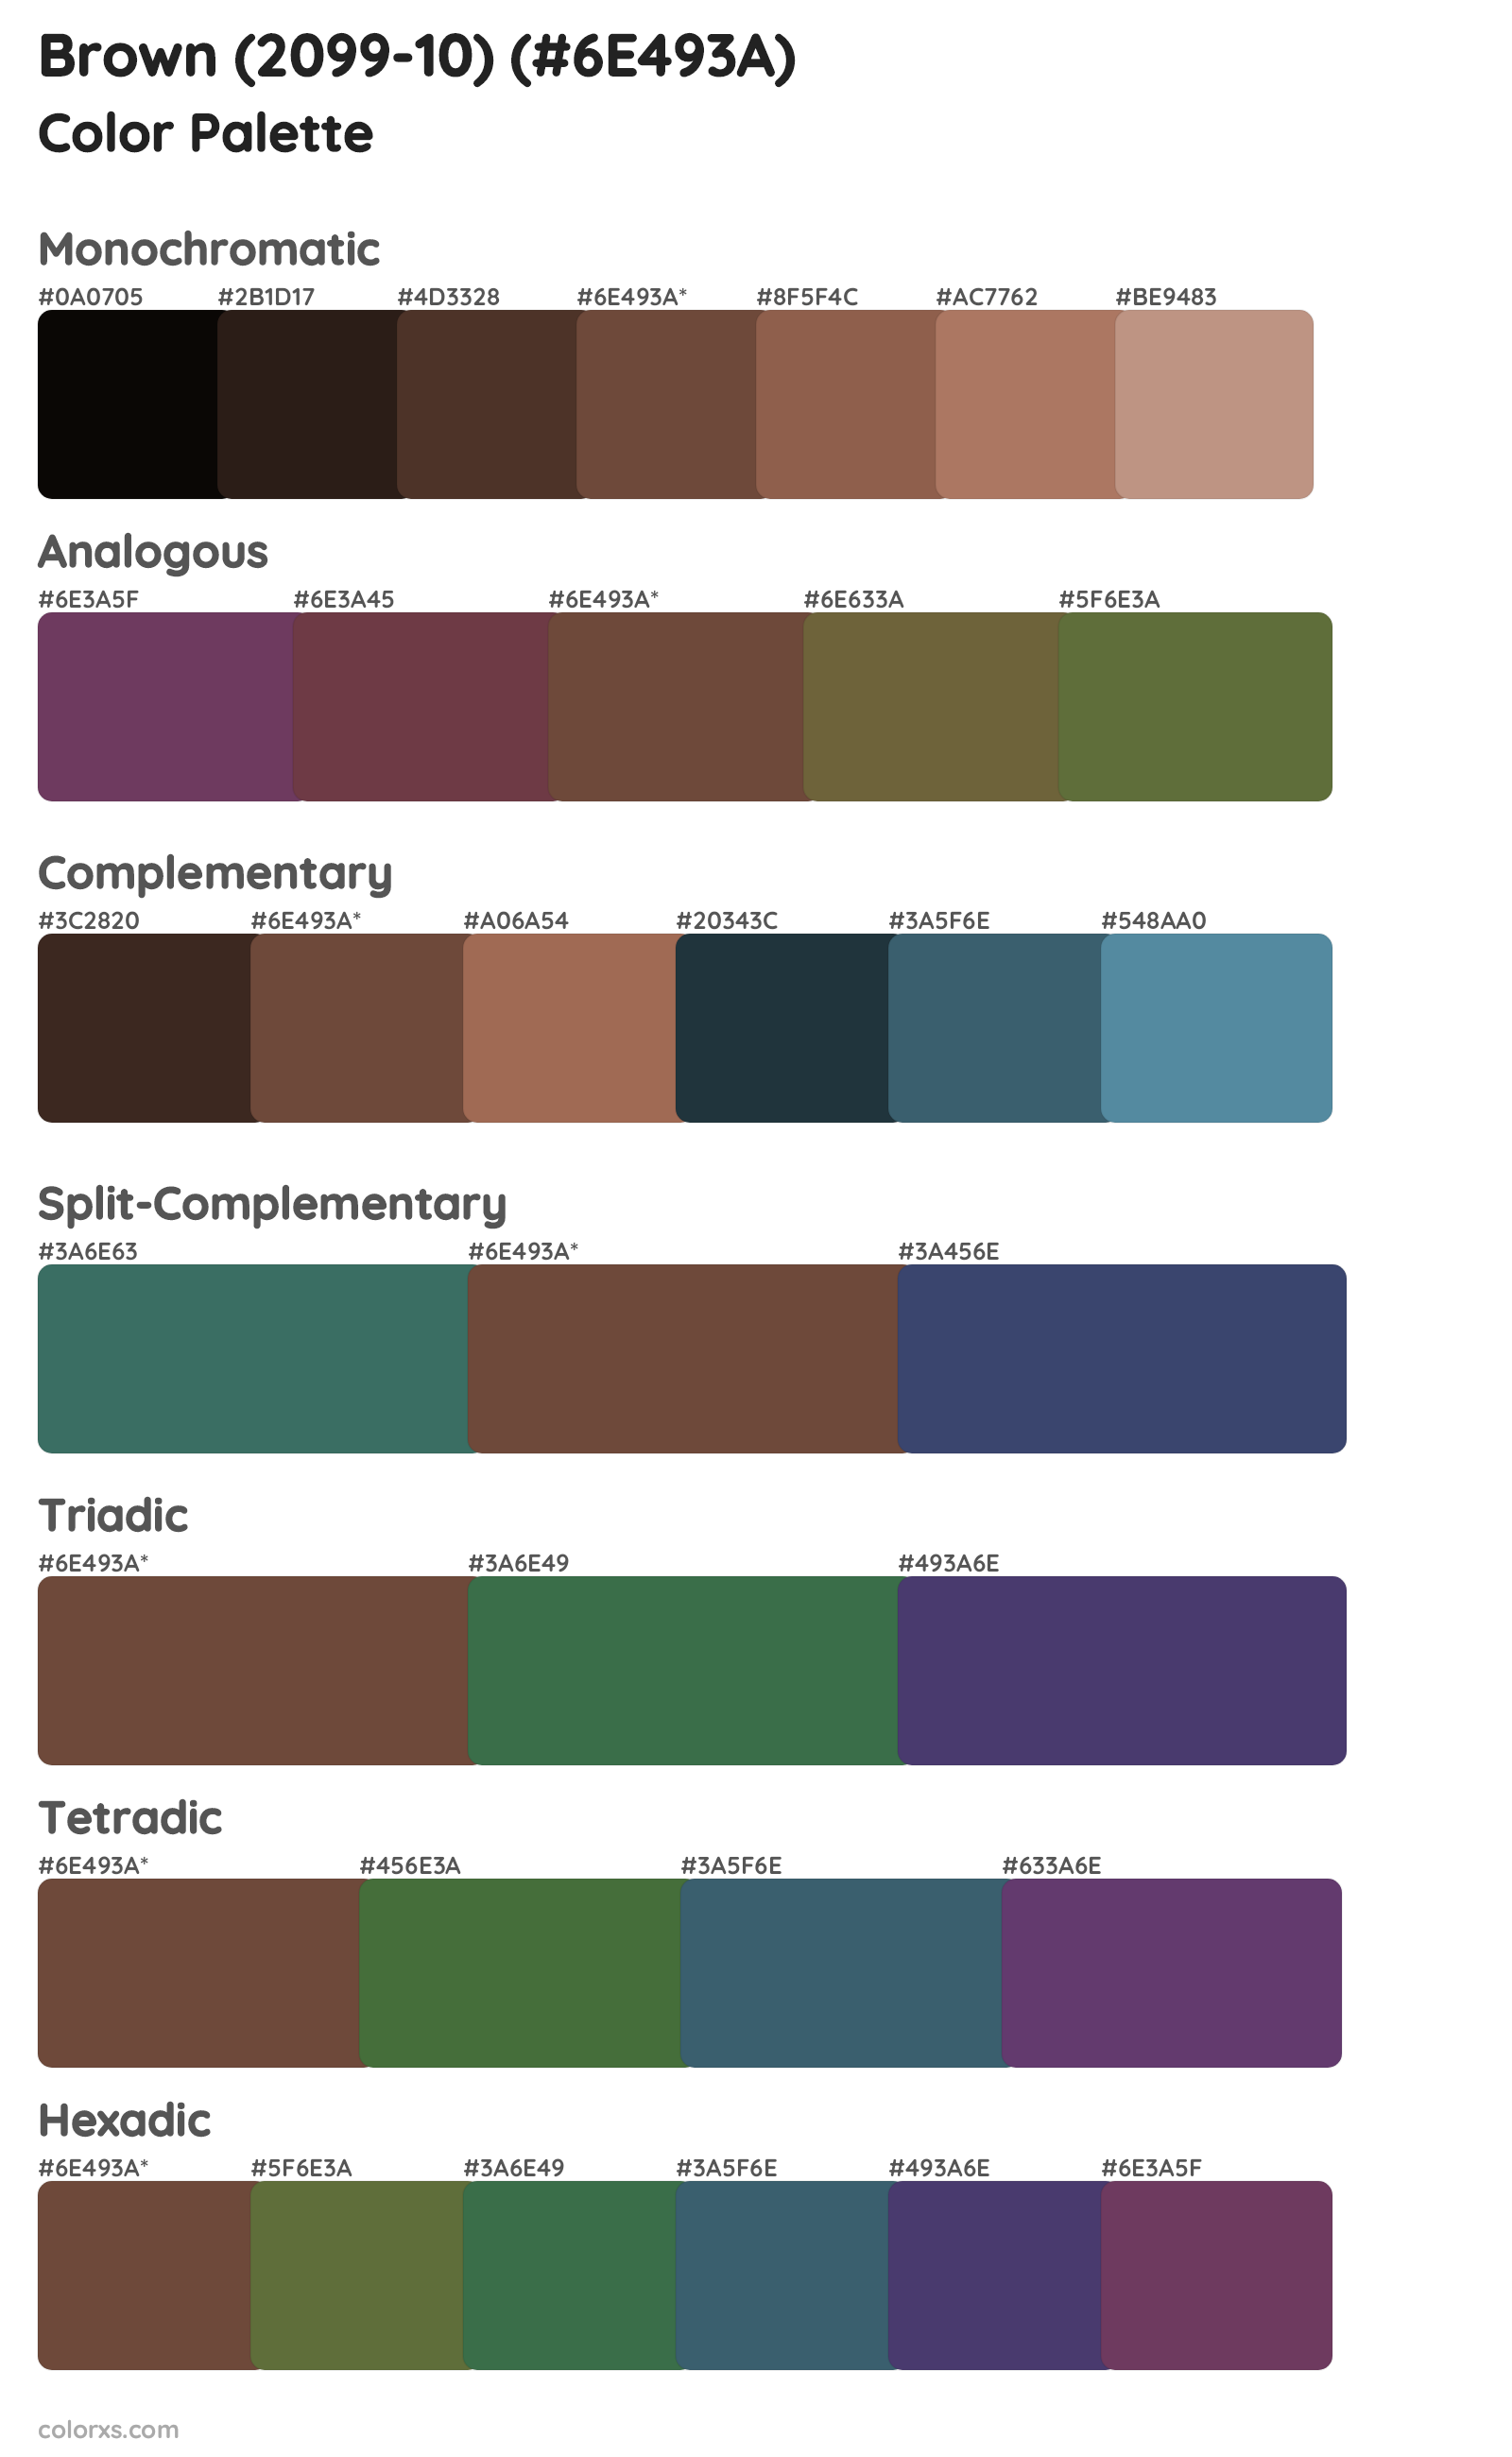 Brown (2099-10) Color Scheme Palettes